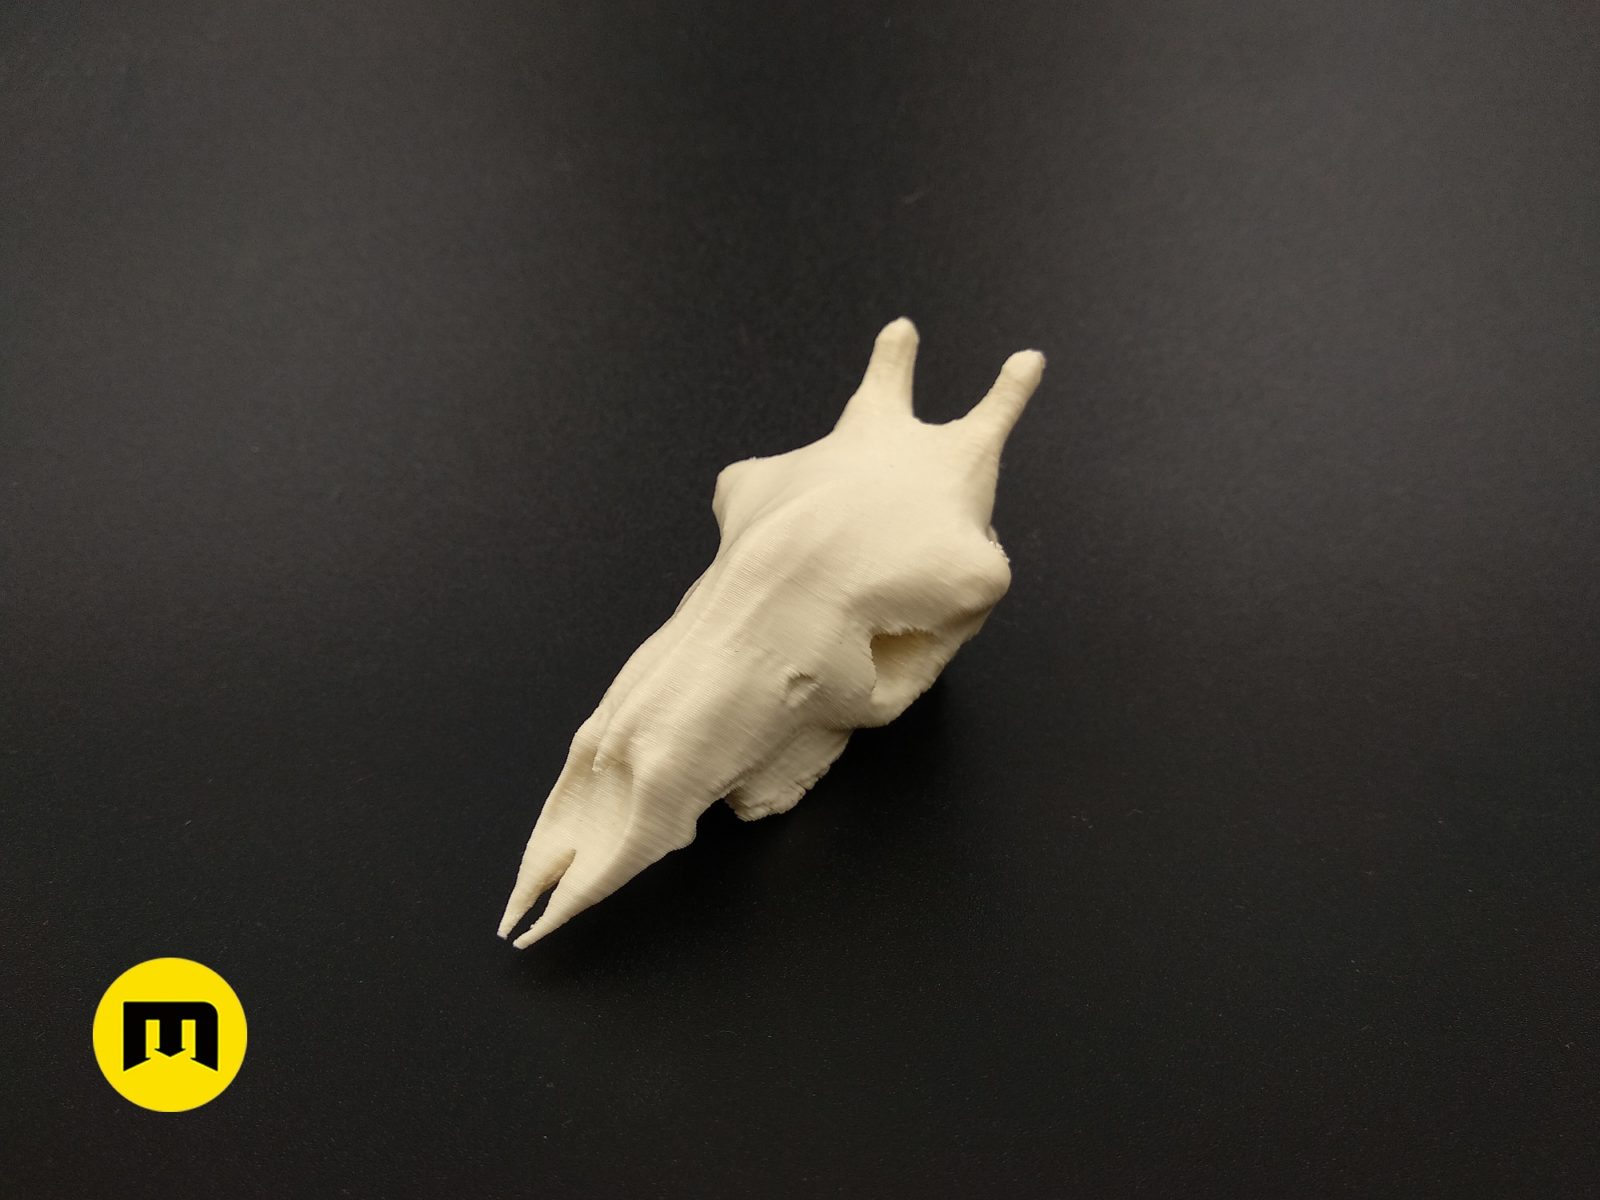 Giraffe Skull 3D print model